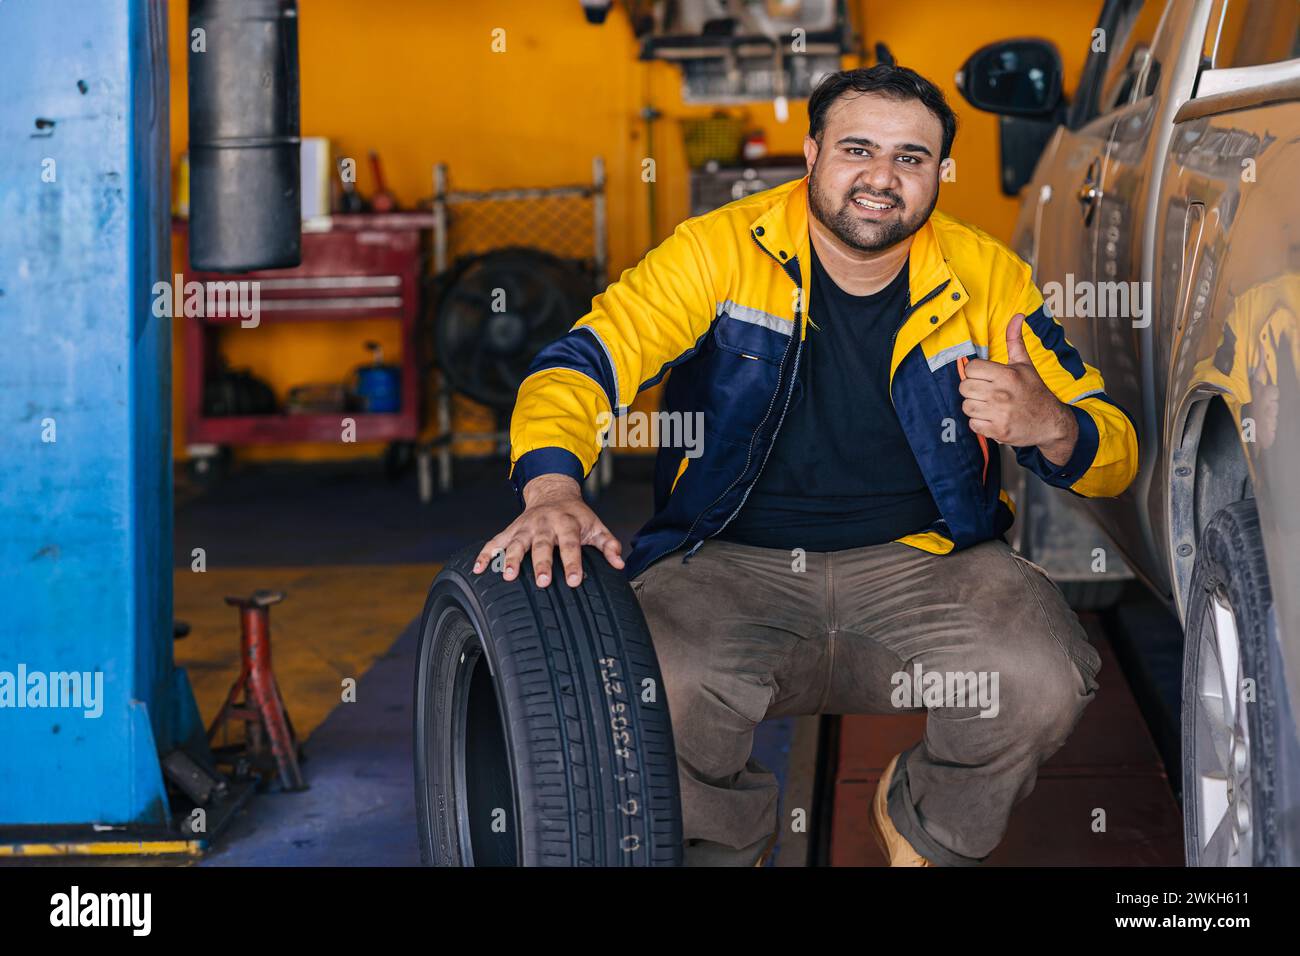 Trabajador indio del hombre del retrato en el servicio del coche del trabajo feliz del mecánico auto del garaje substituye el mantenimiento del vehículo del neumático Foto de stock